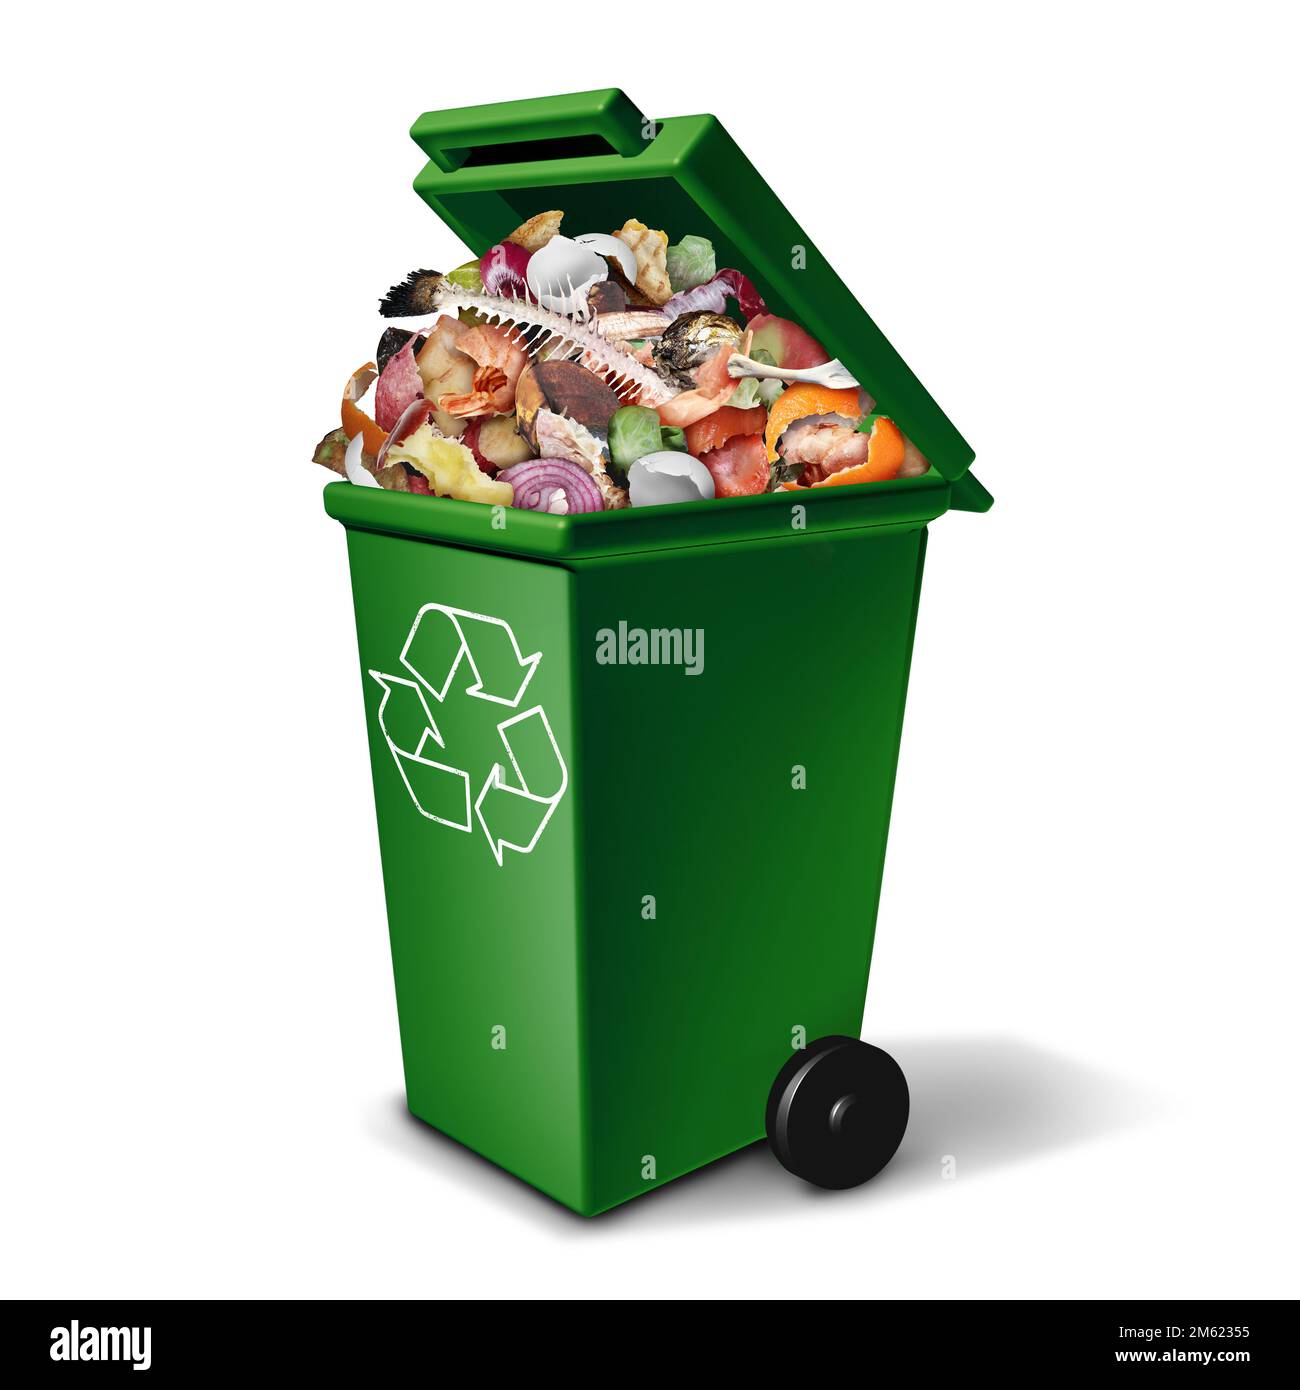 Grüner Kompost und Kompostierung Recycling Müllcontainer zum Recycling organischer Abfälle und kompostierter Lebensmittel zur Umwandlung in Dünger Stockfoto